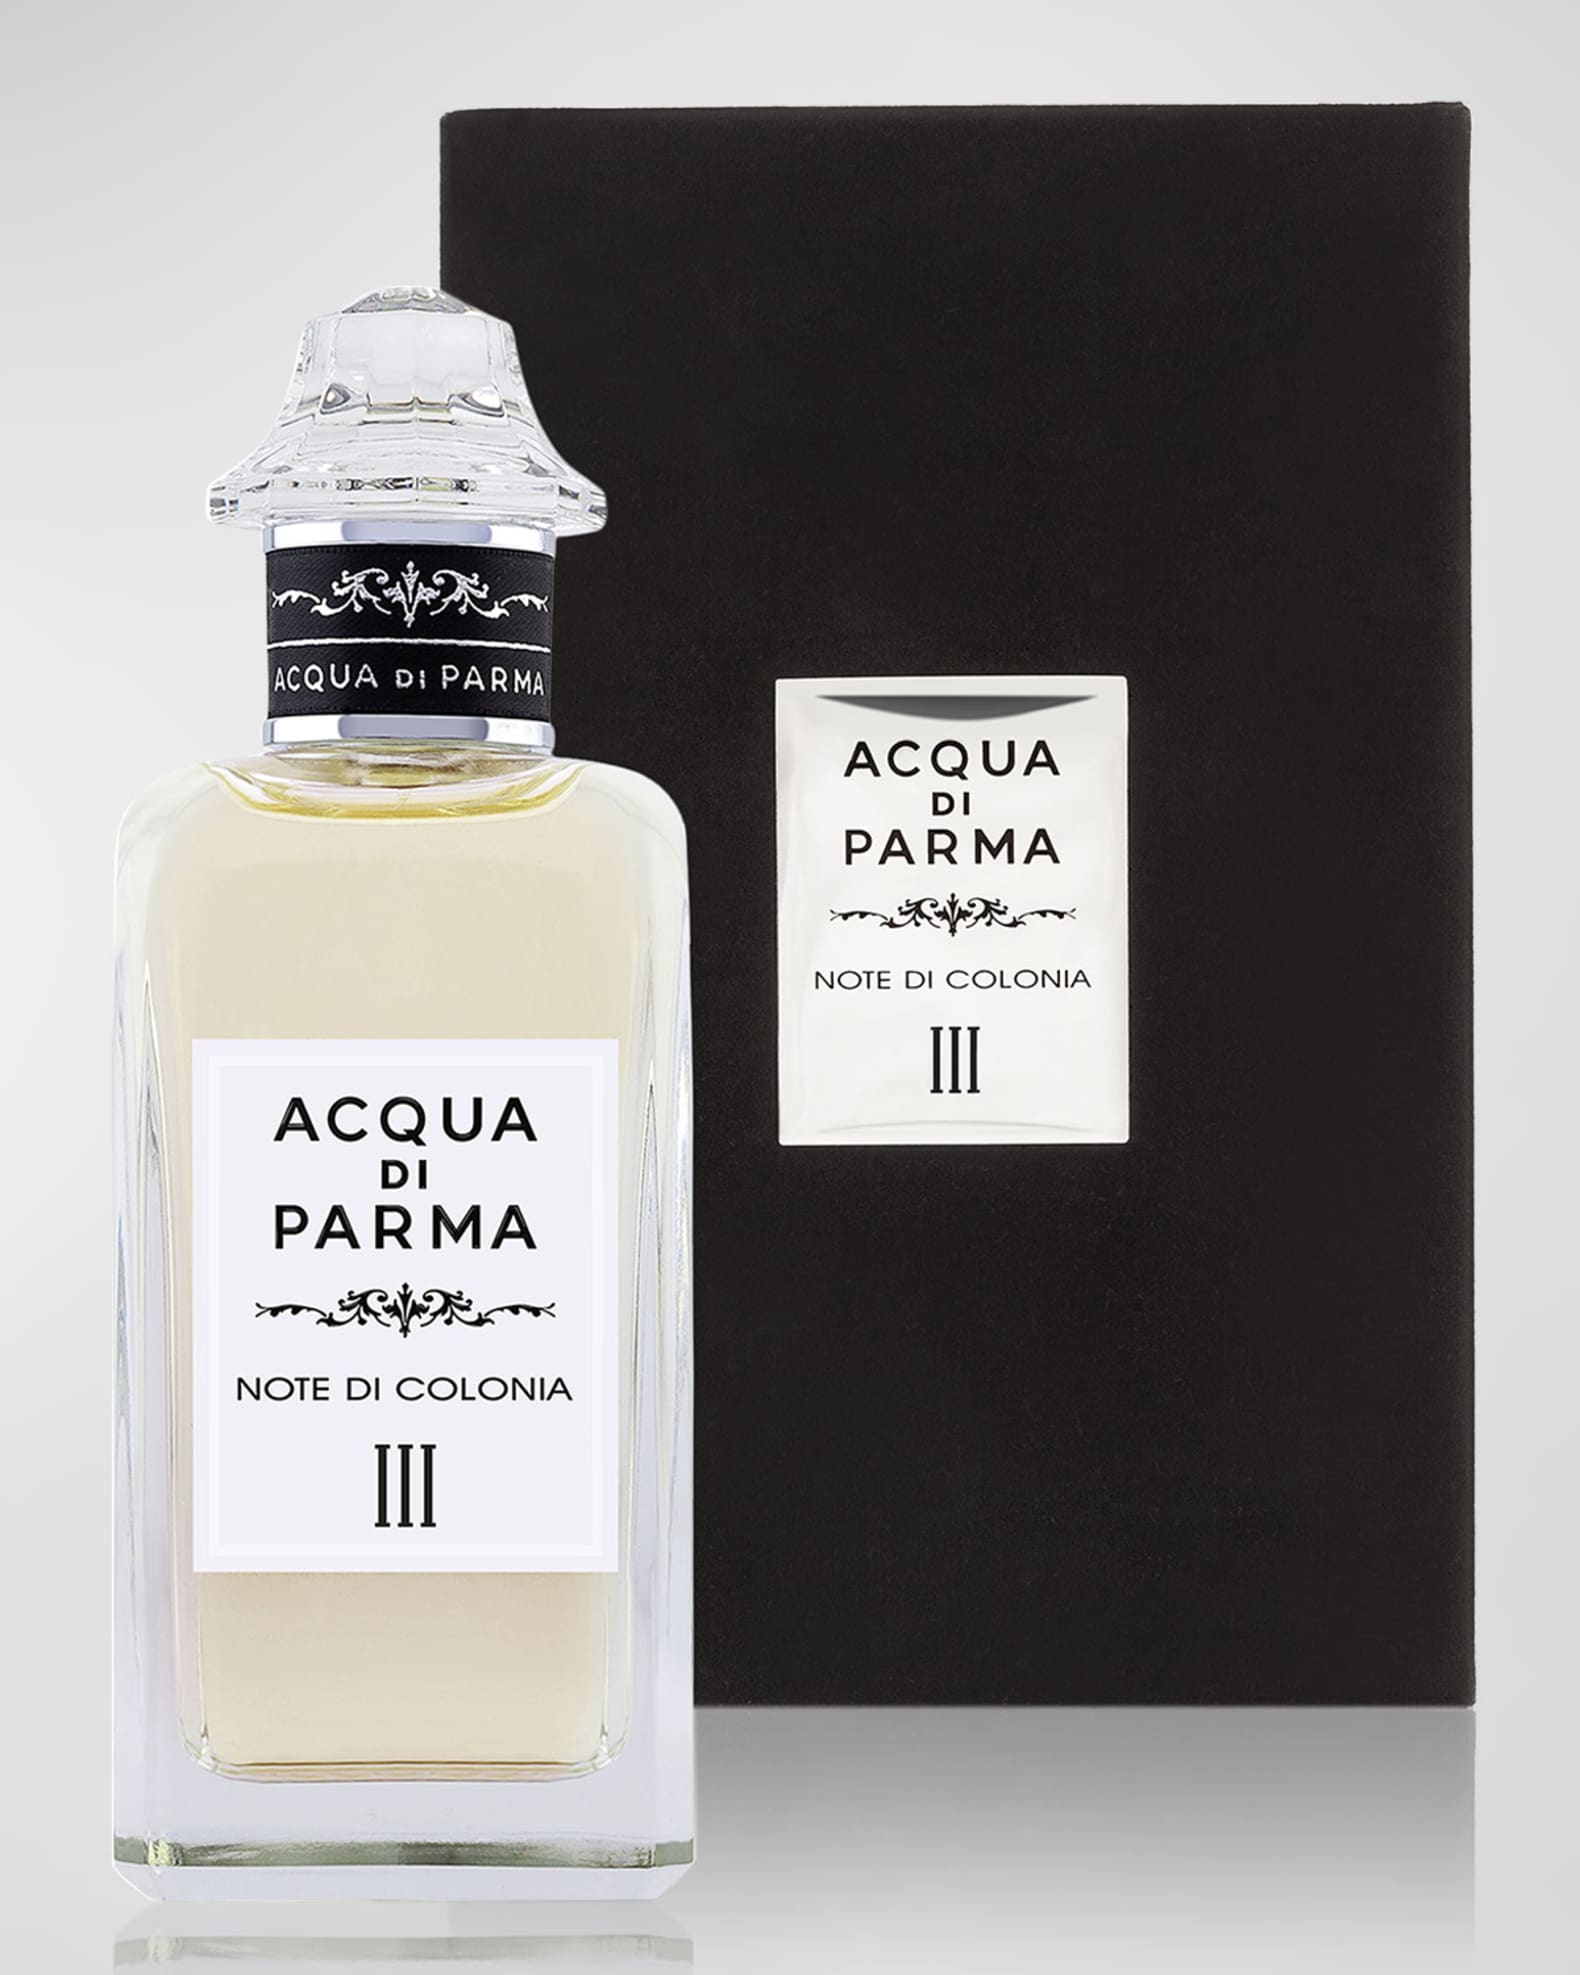 Acqua Di Parma - Note Di Colonia III Eau De Cologne Spray 150ml/5oz  8028713290039 - Fragrances & Beauty, Note Di Colonia III - Jomashop